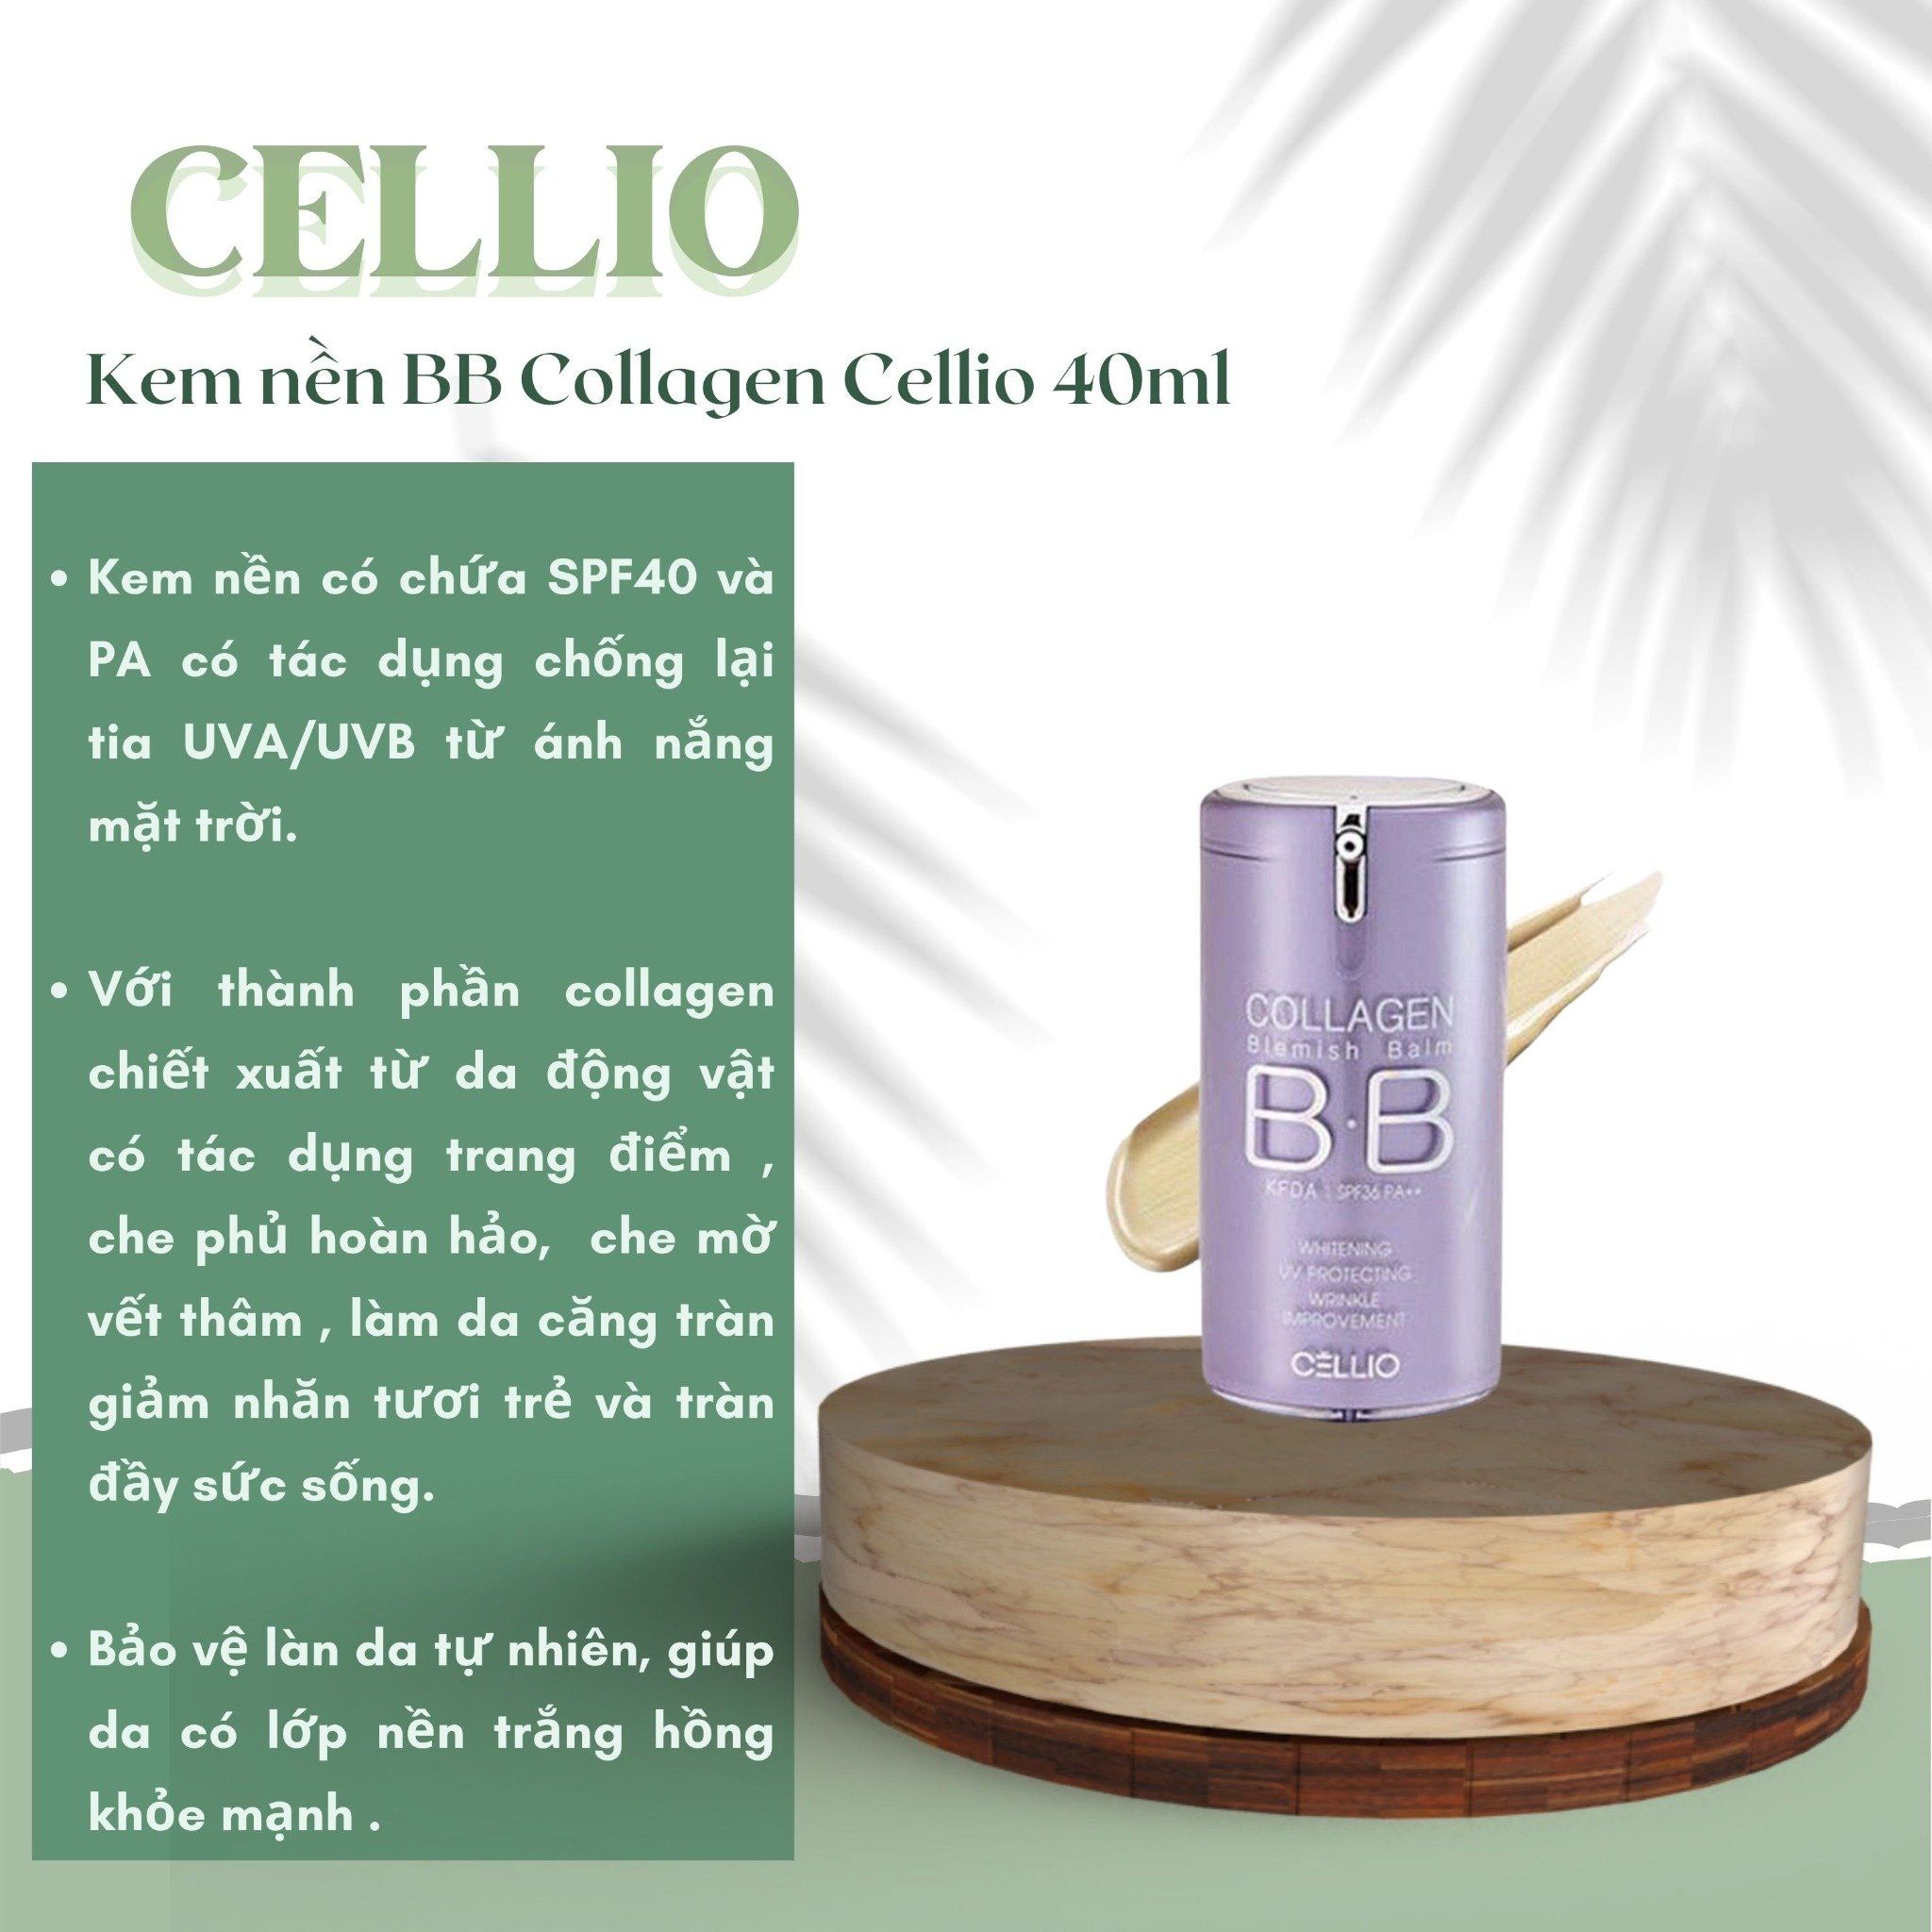 Kem nền BB Collagen Cellio là giải pháp tuyệt vời cho những cô gái mong muốn có làn da trẻ trung và rạng rỡ. Sản phẩm chứa thành phần collagen, giúp cải thiện sức sống và kích thước của các tế bào da, cùng với khả năng bảo vệ da khỏi tia UV. Đảm bảo độ bám cực tốt và lớp nền mỏng mịn, bạn sẽ thích thú khi sử dụng kem nền này.